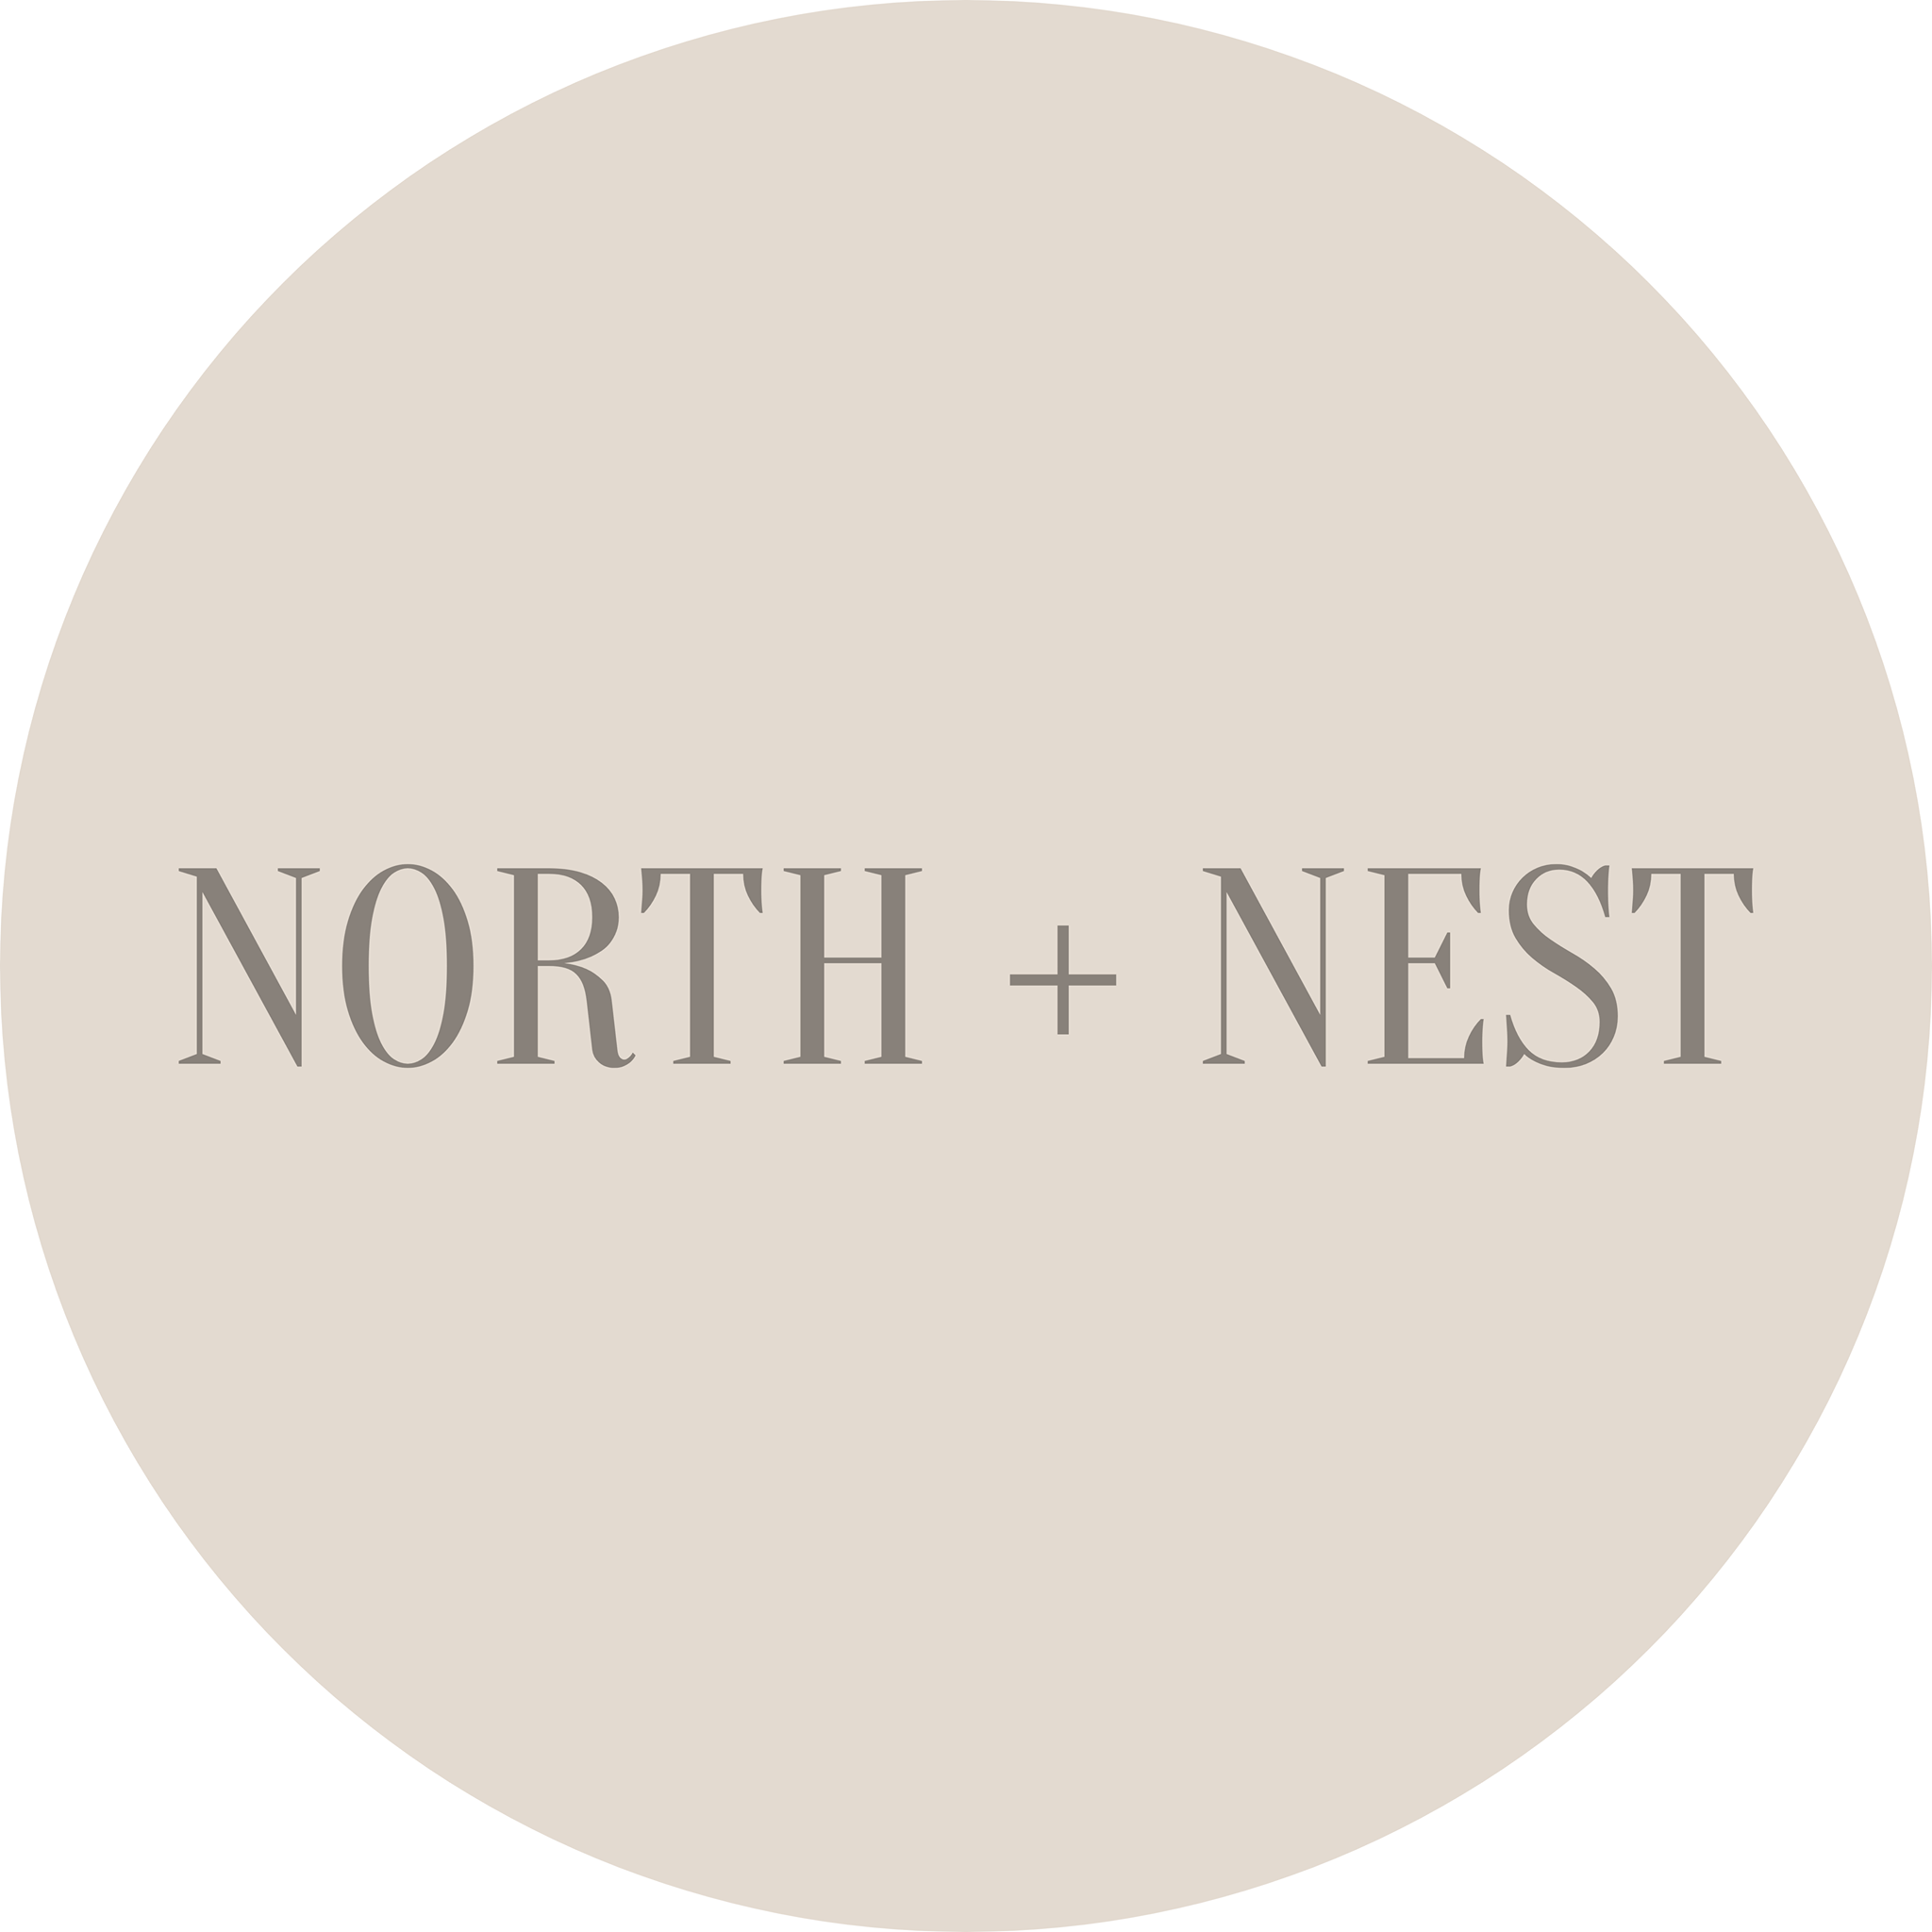 NORTH + NEST